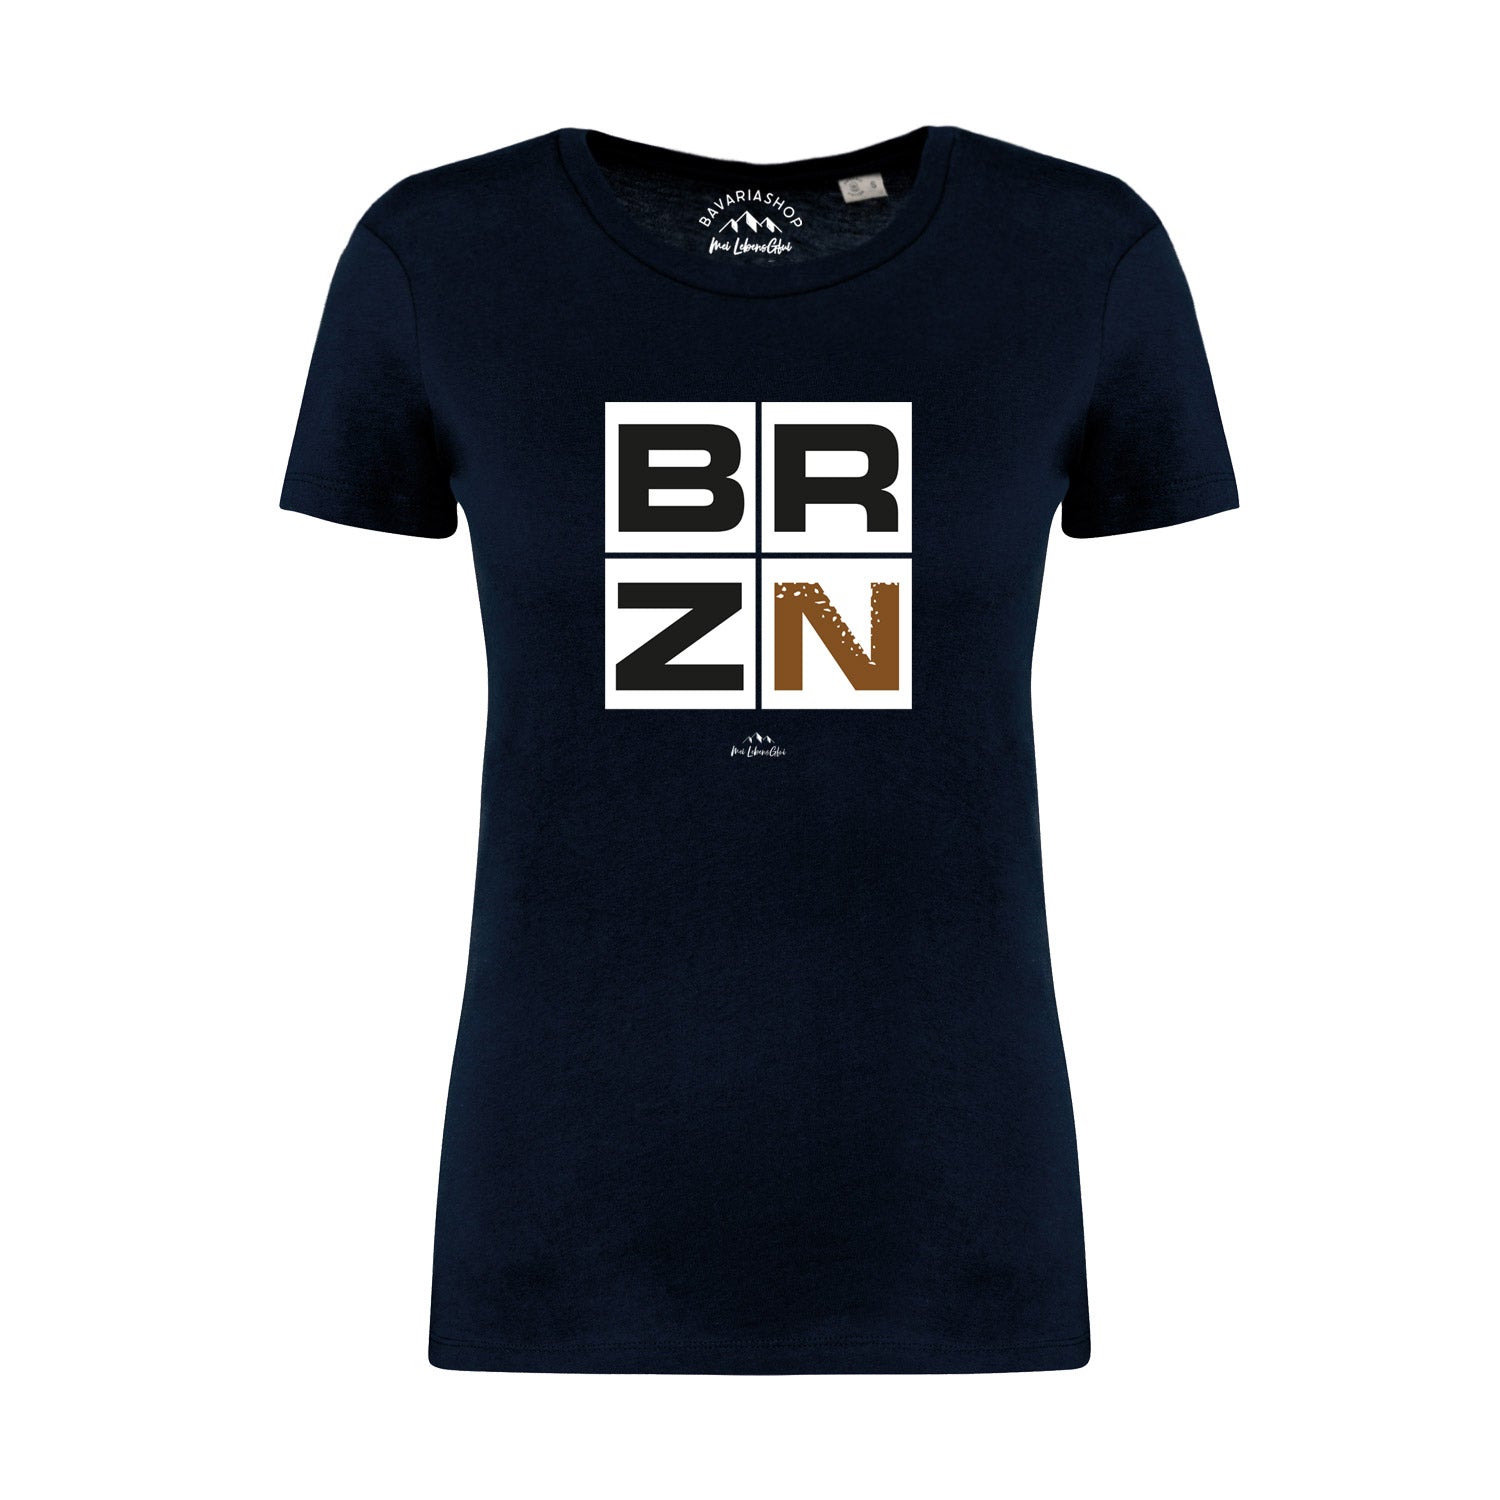 Damen T-Shirt "BRZN"